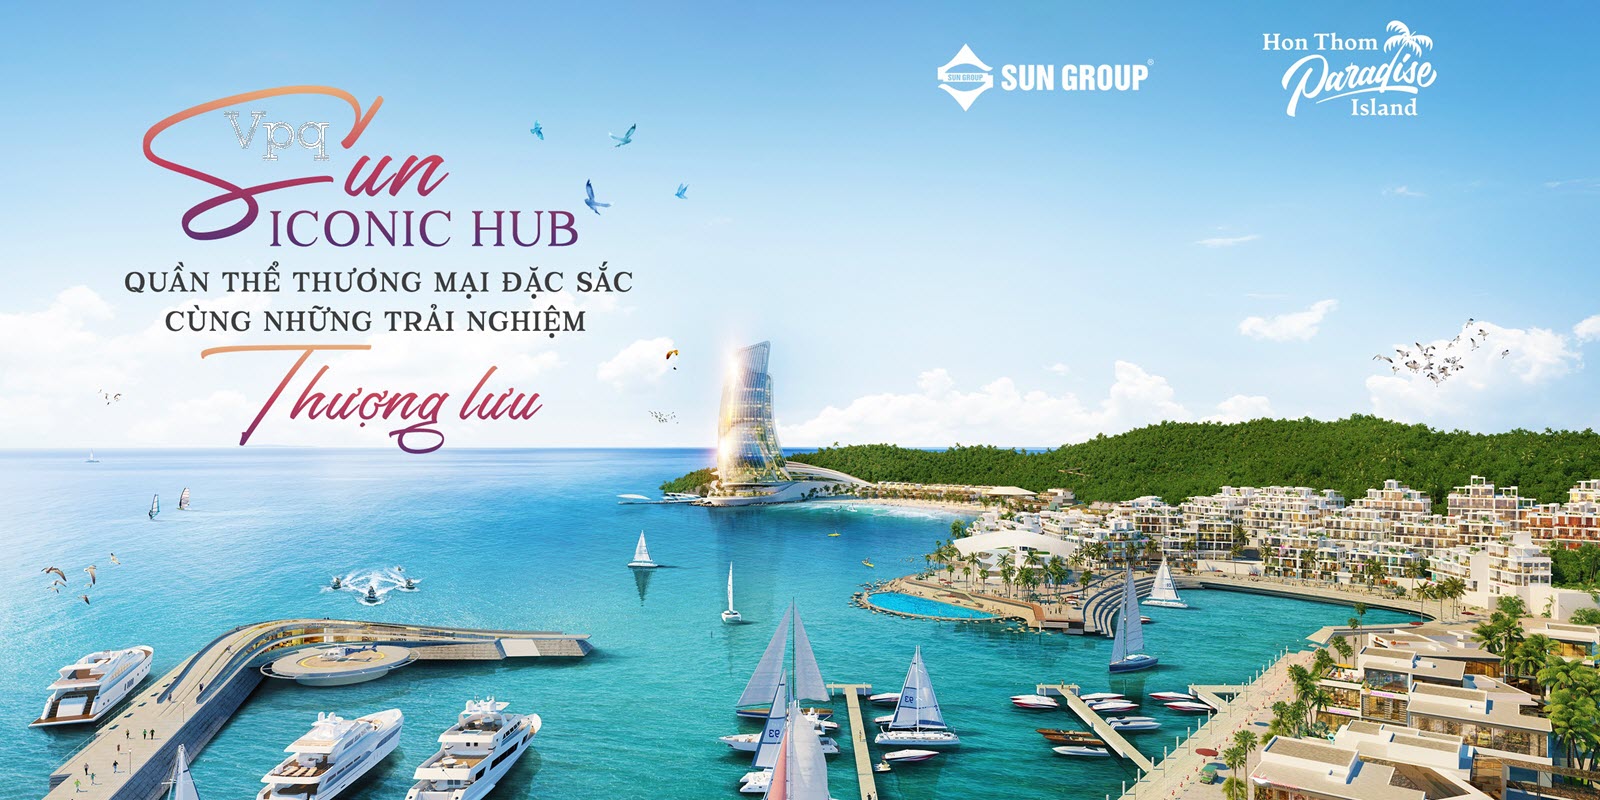 Sun Iconic Hub - Điểm đến của những công trình biểu tượng Sun Group Hòn Thơm